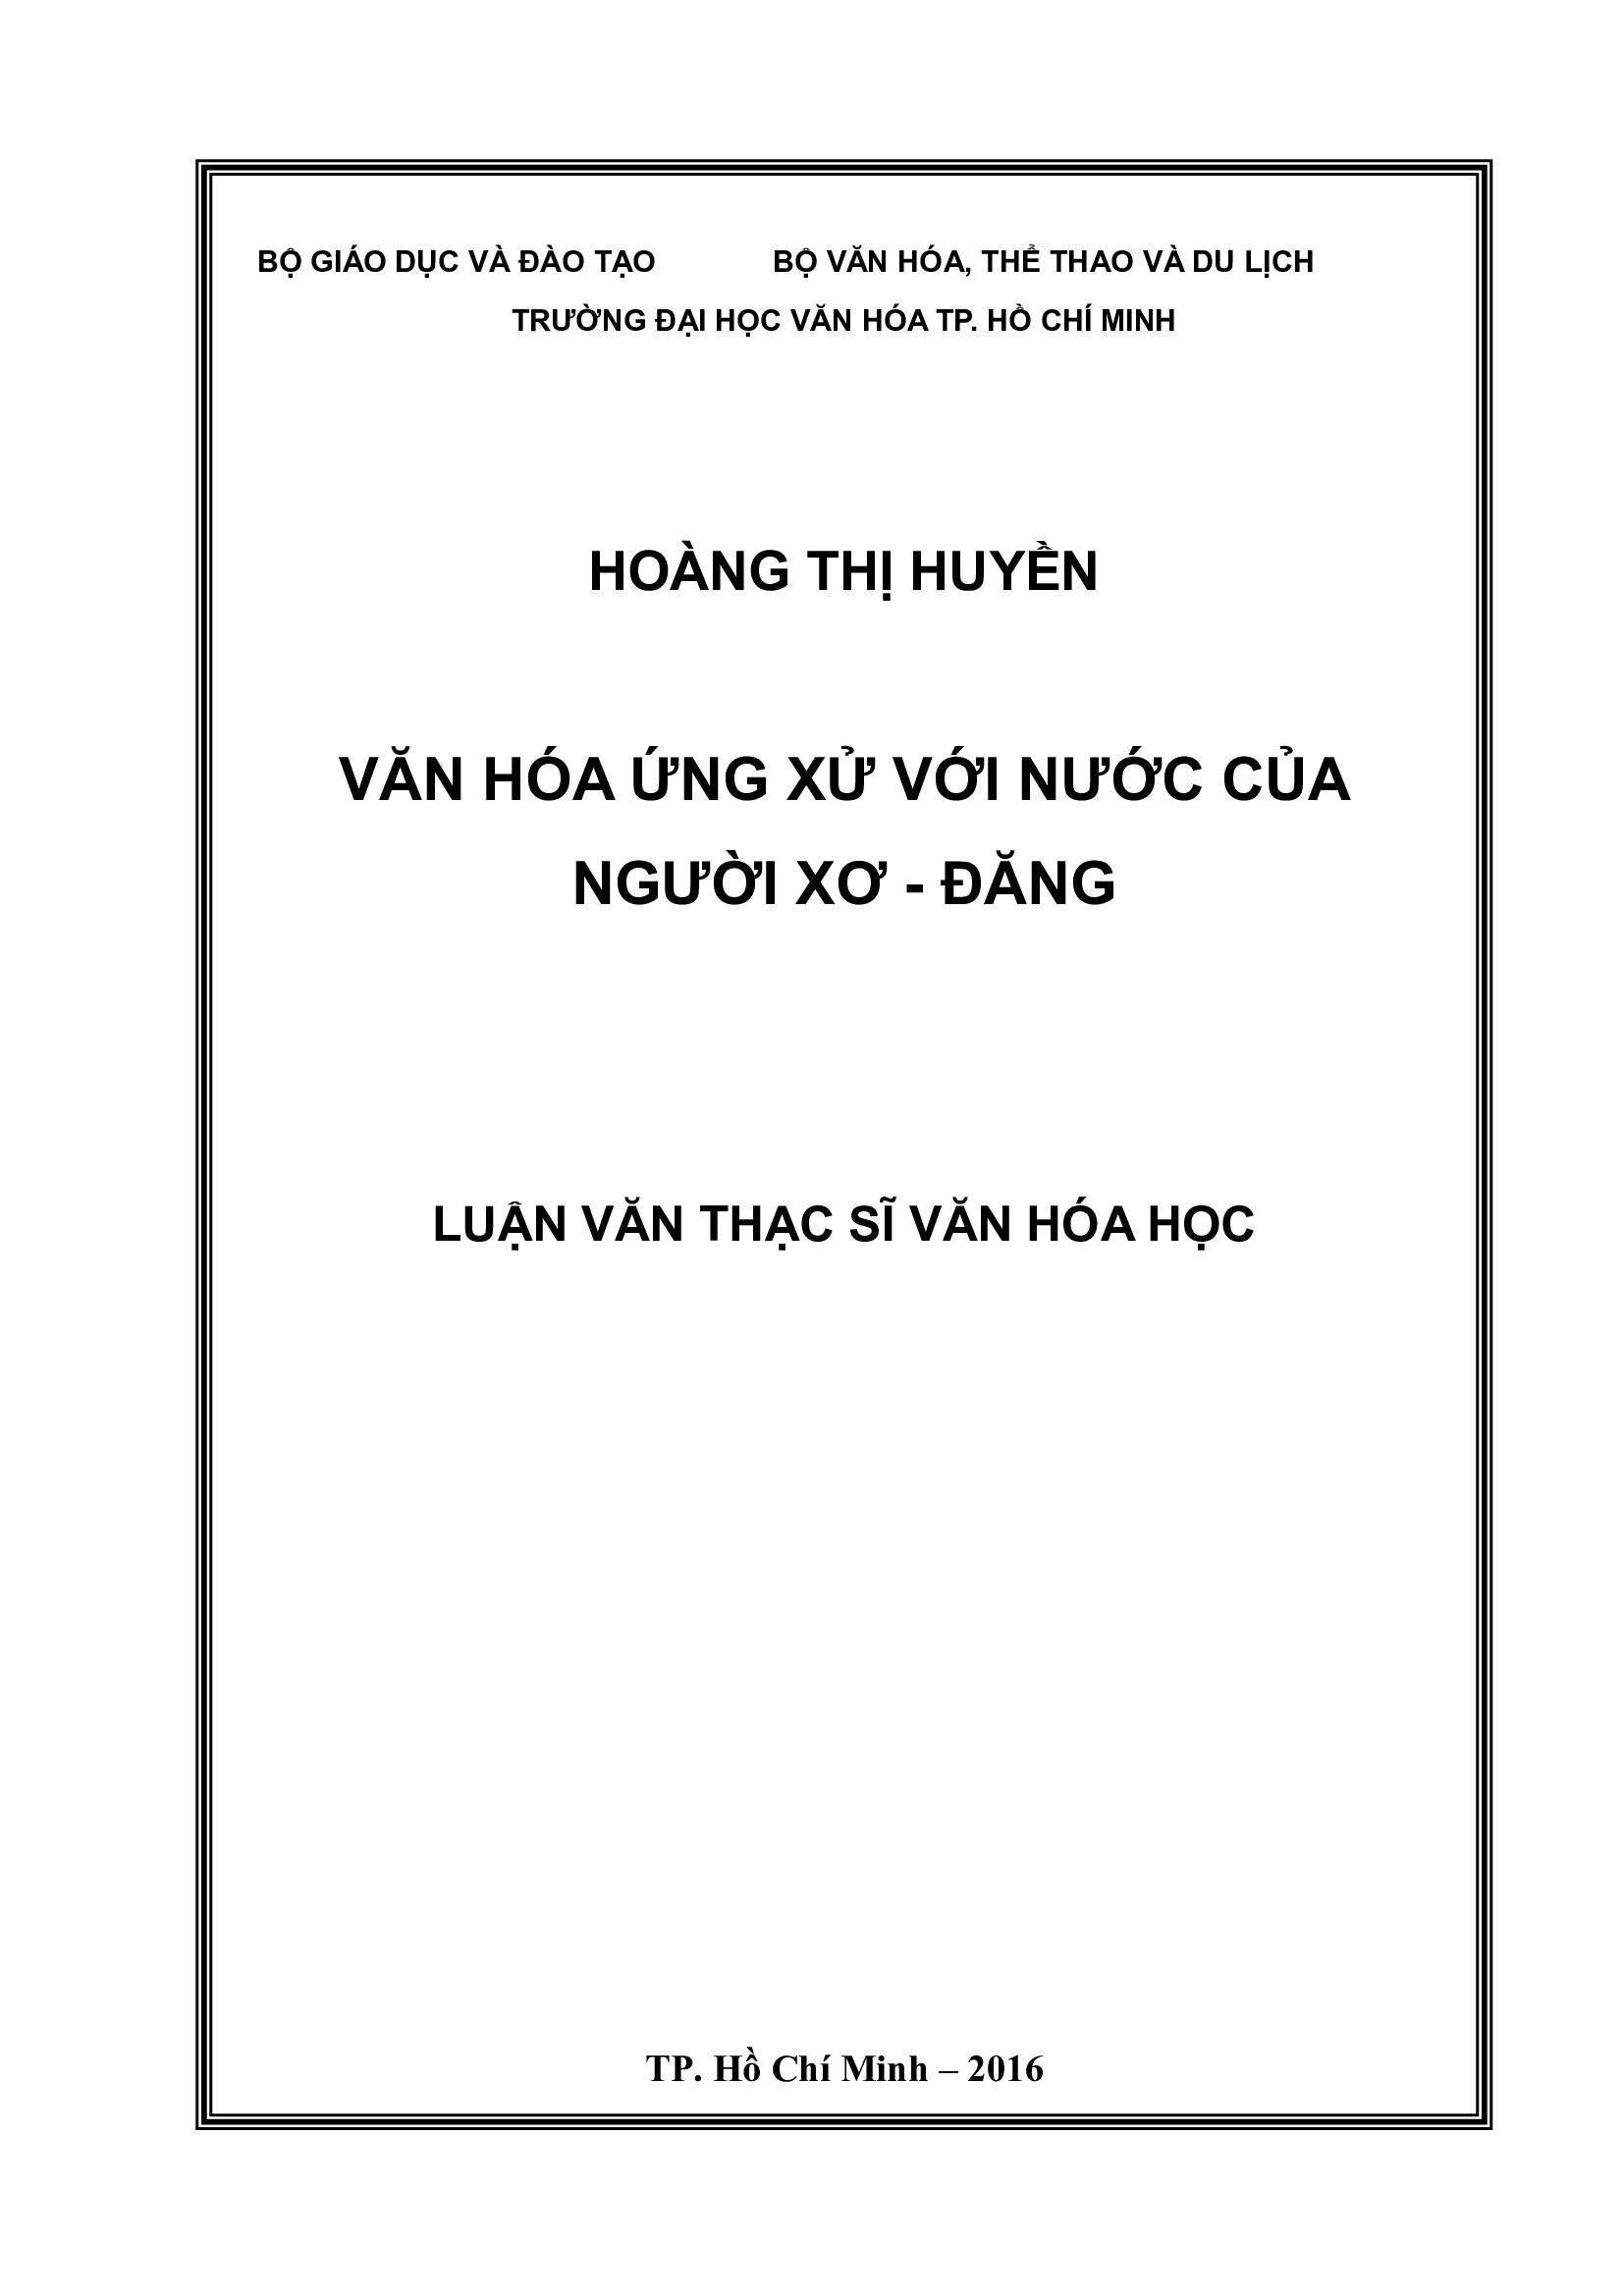 Văn hóa ứng xử với nước của Nguoiwg Xơ - Đăng (Qua khảo sát tại xã Ngọc Linh, huyện Đăk Glêi, tỉnh Kon Tum)